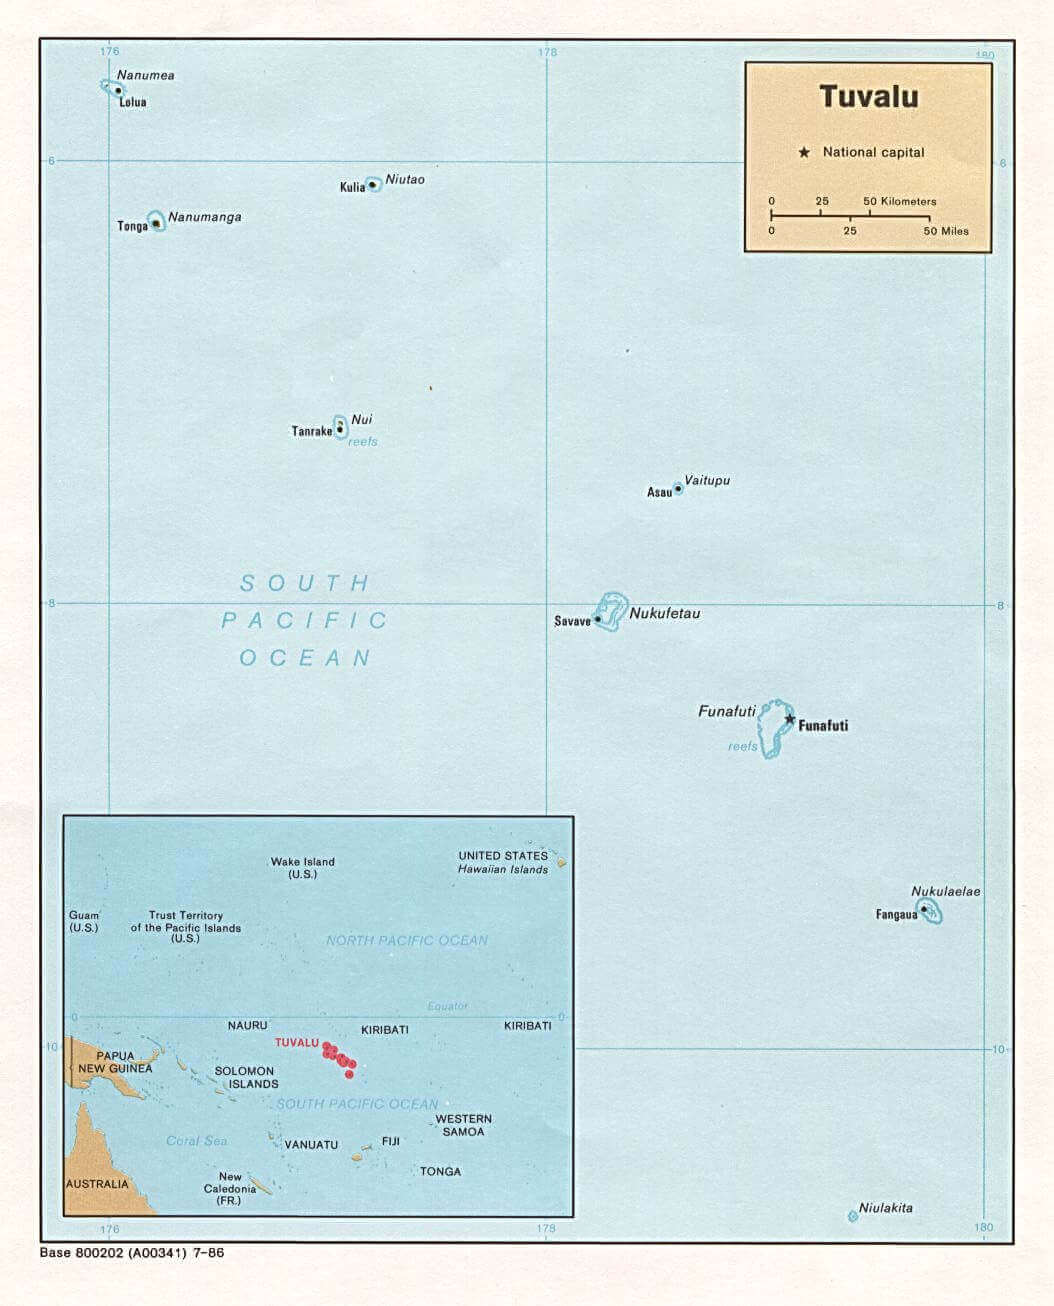 Die Lage Tuvalu